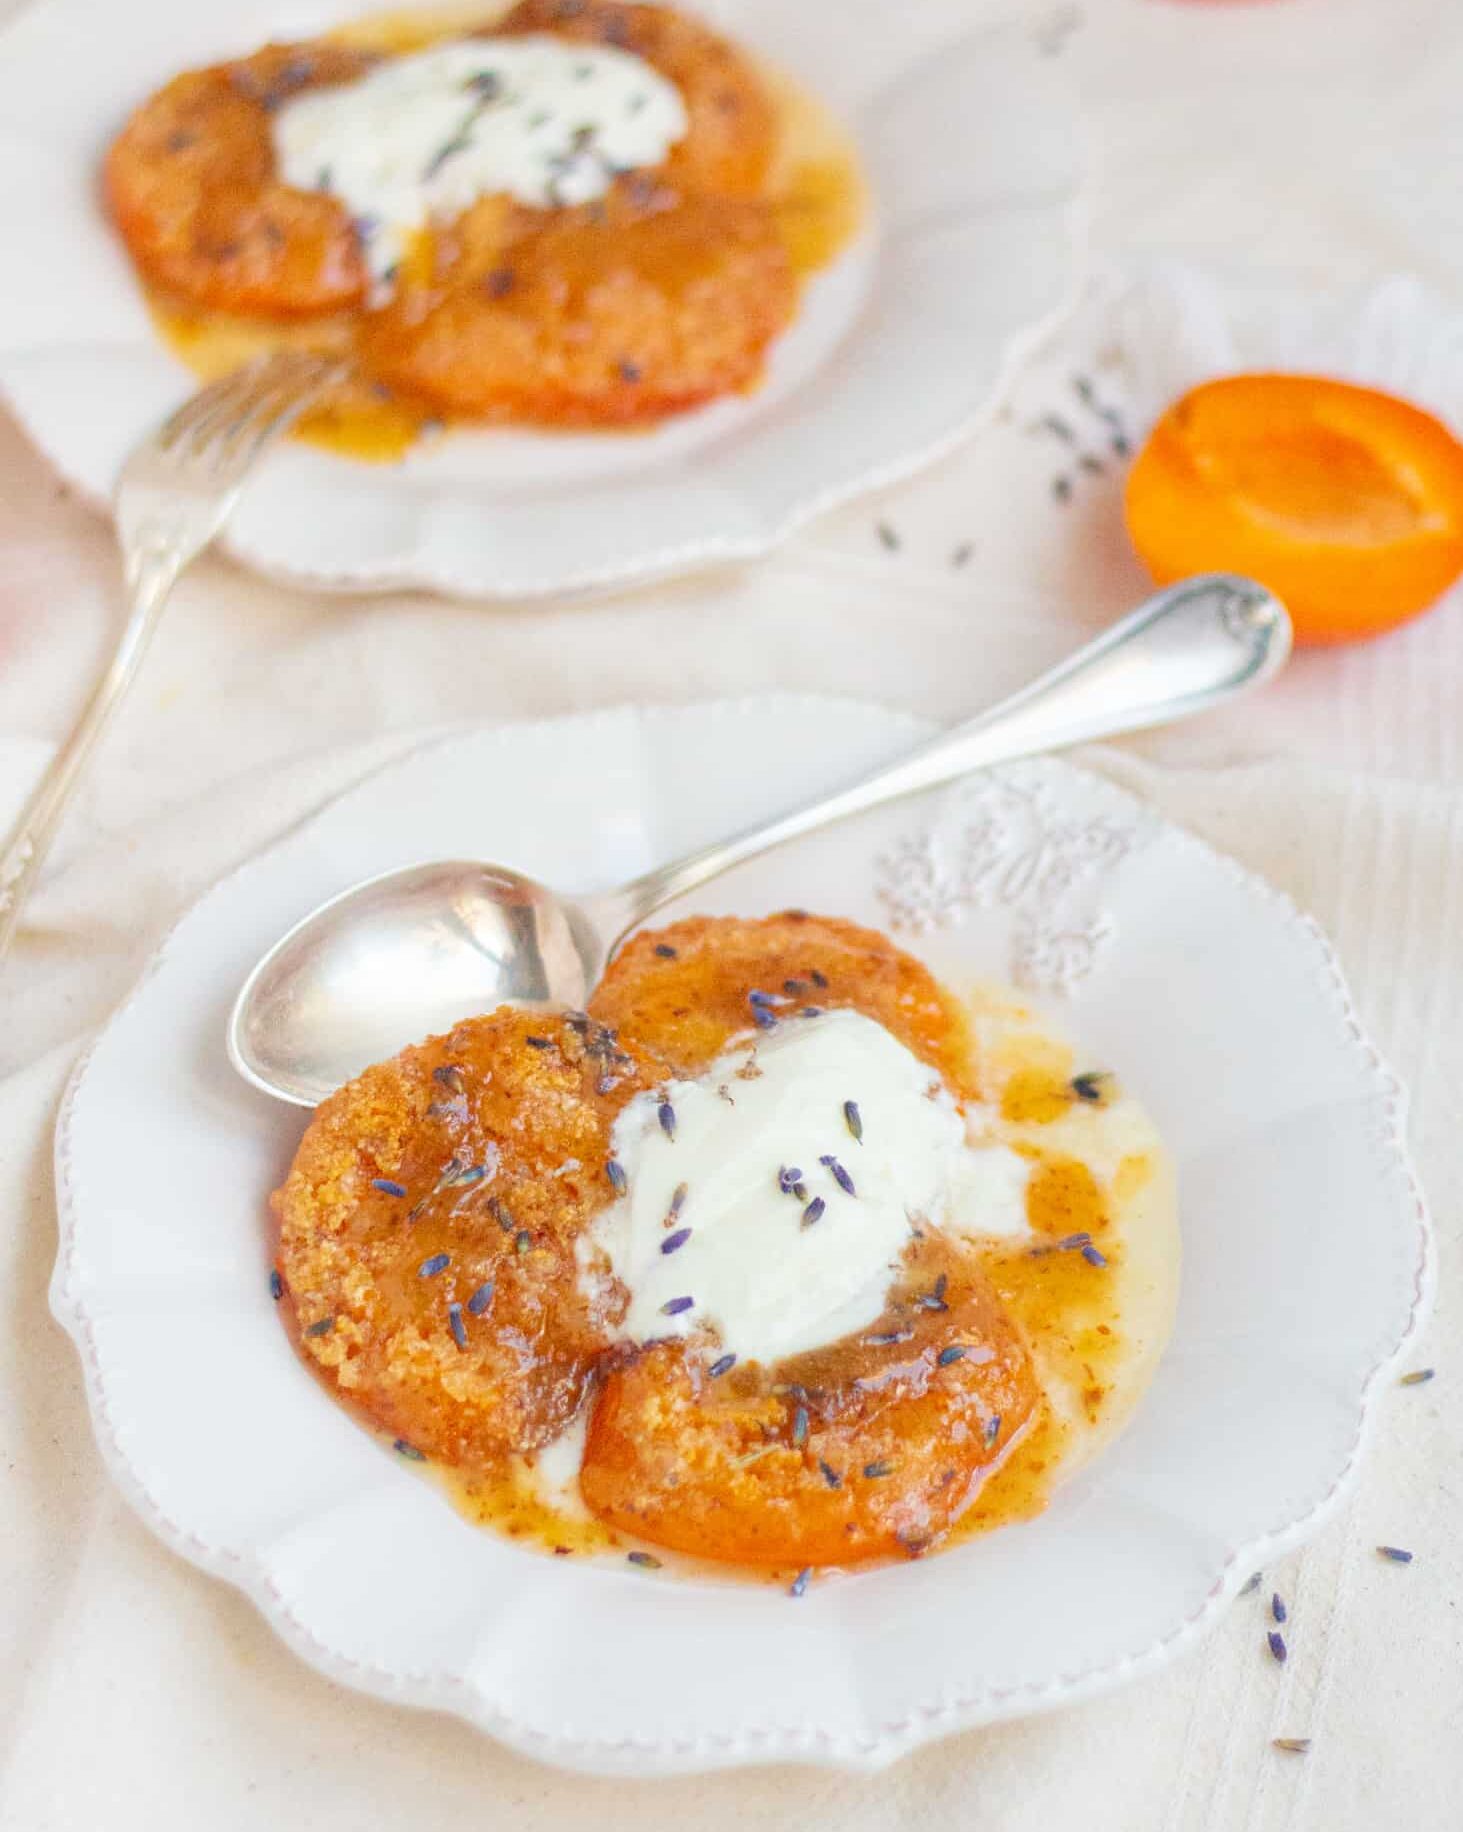 Десерт из абрикосов - летнее лакомство с ароматом Прованса! Невероятное сочетание сочных абрикосов, хрустящего миндаля и ароматной лаванды.